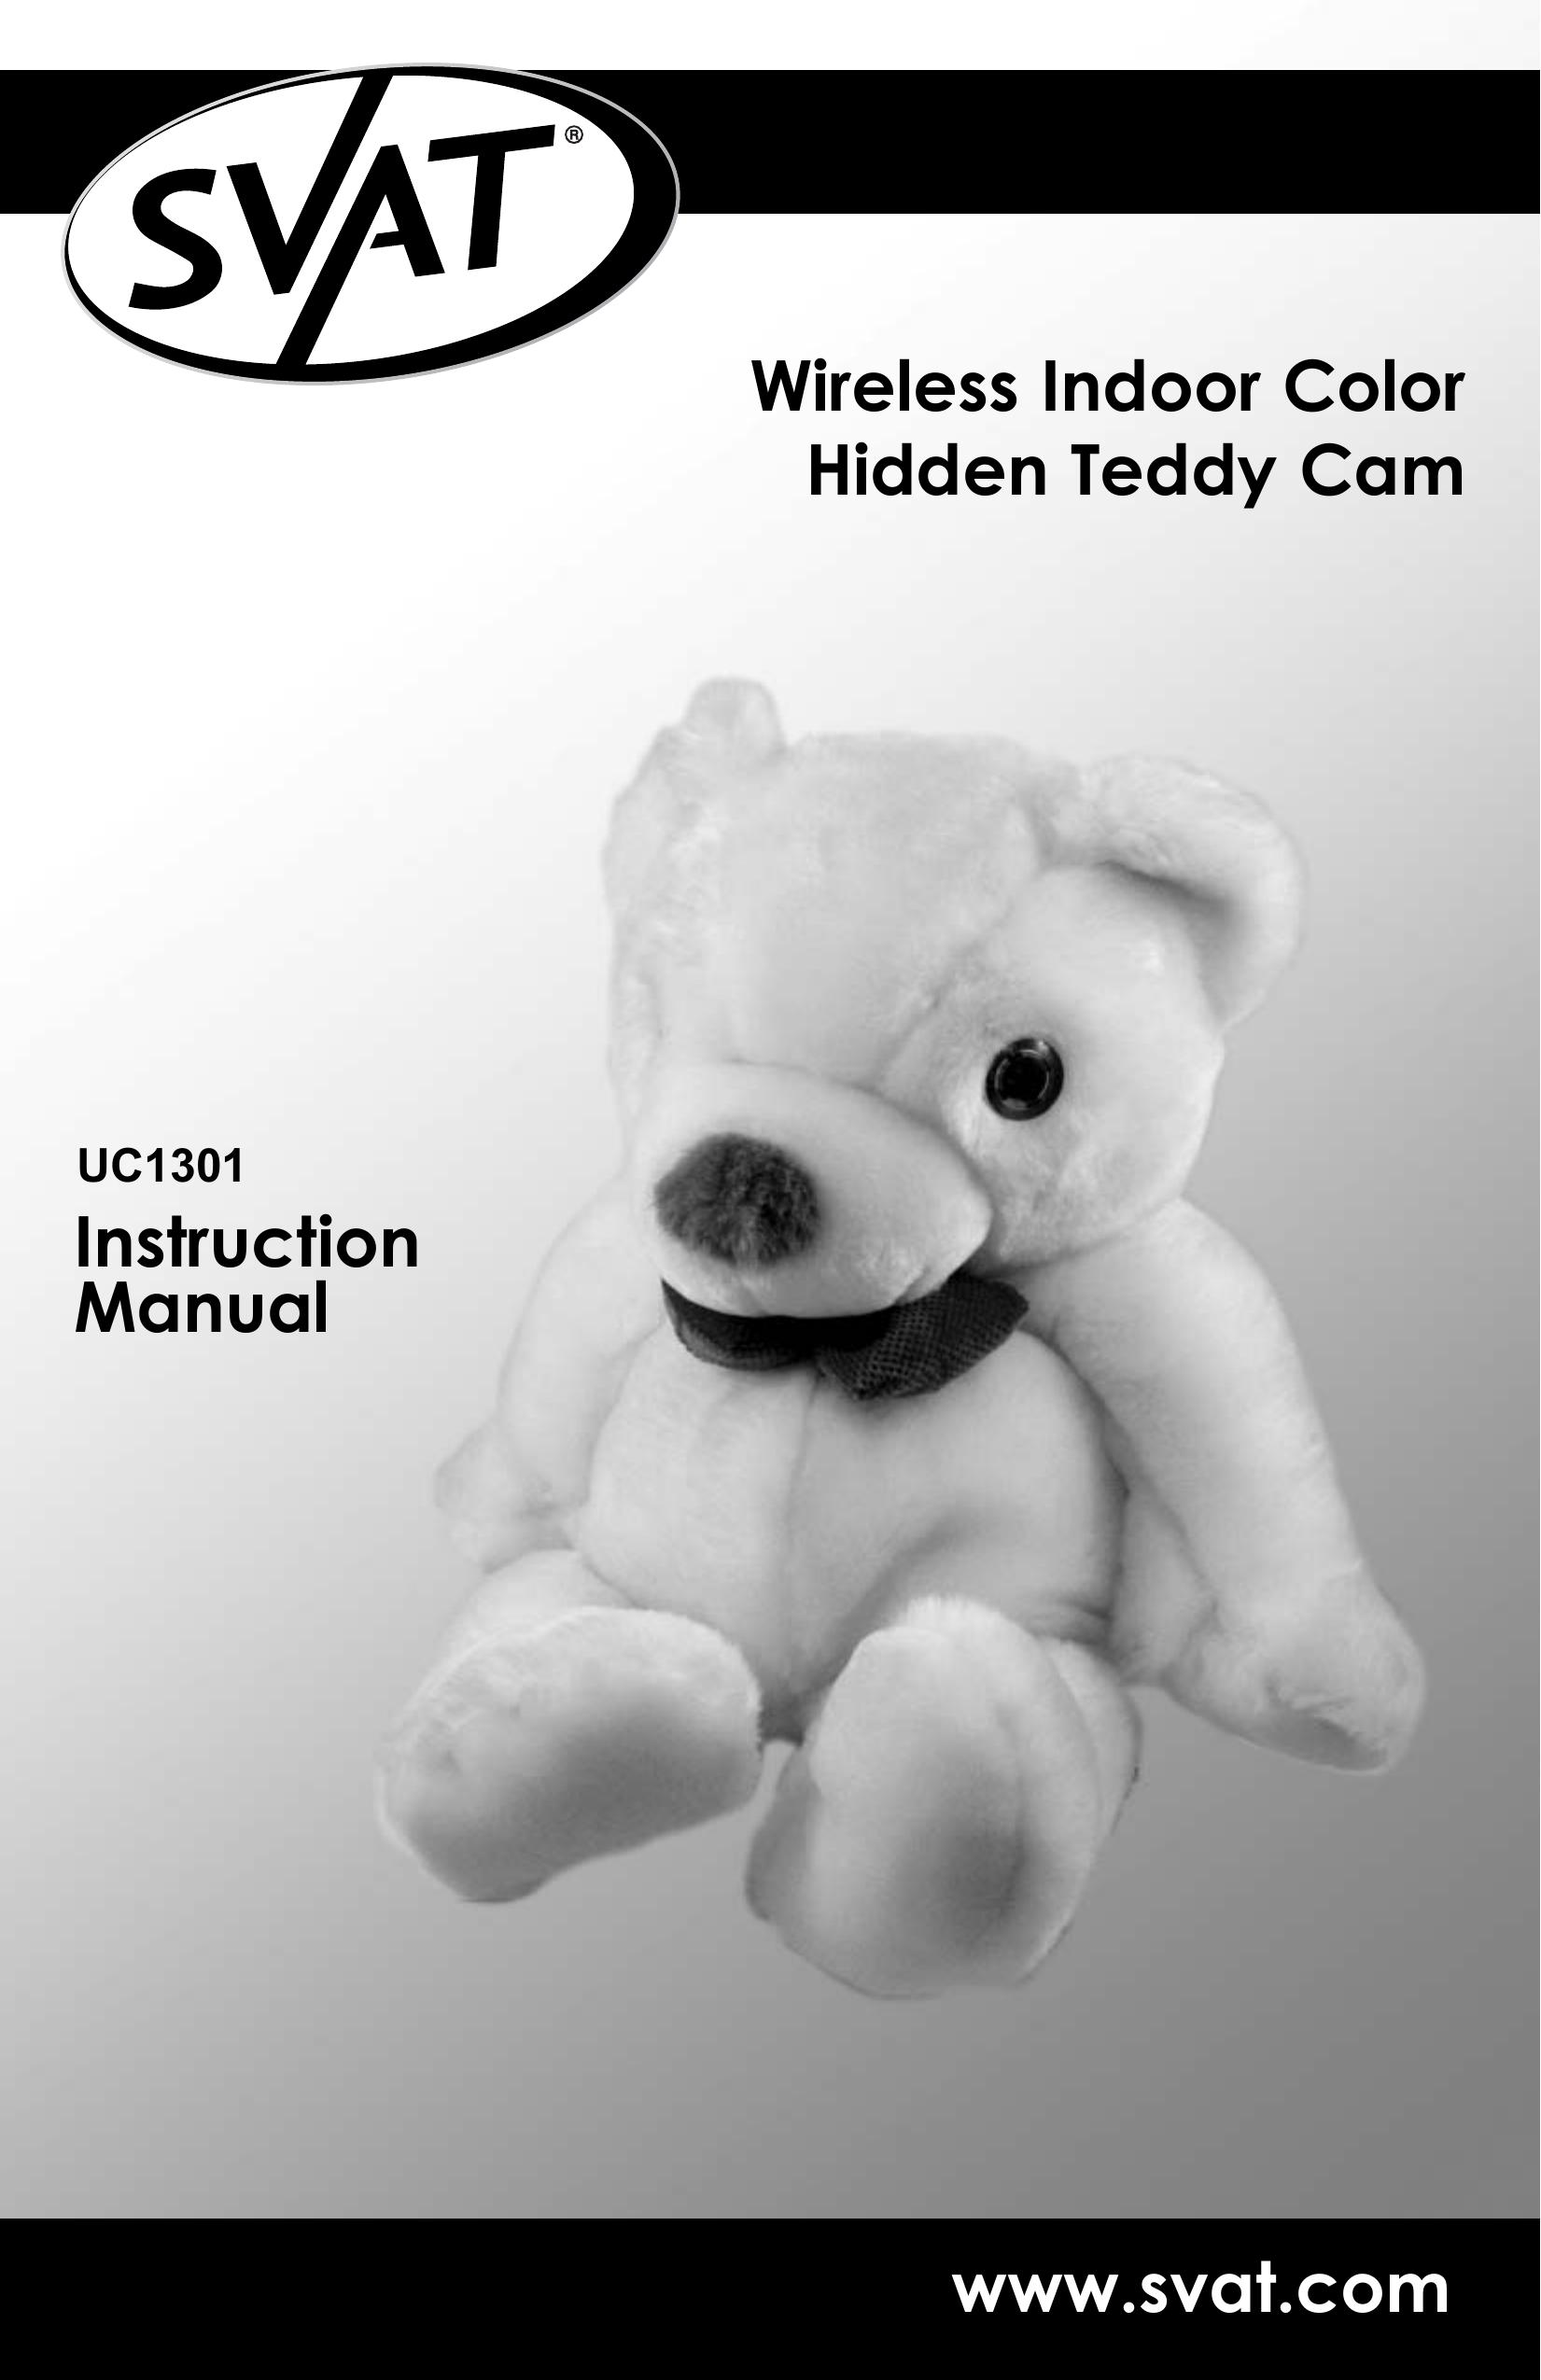 SVAT Electronics UC1301 Security Camera User Manual